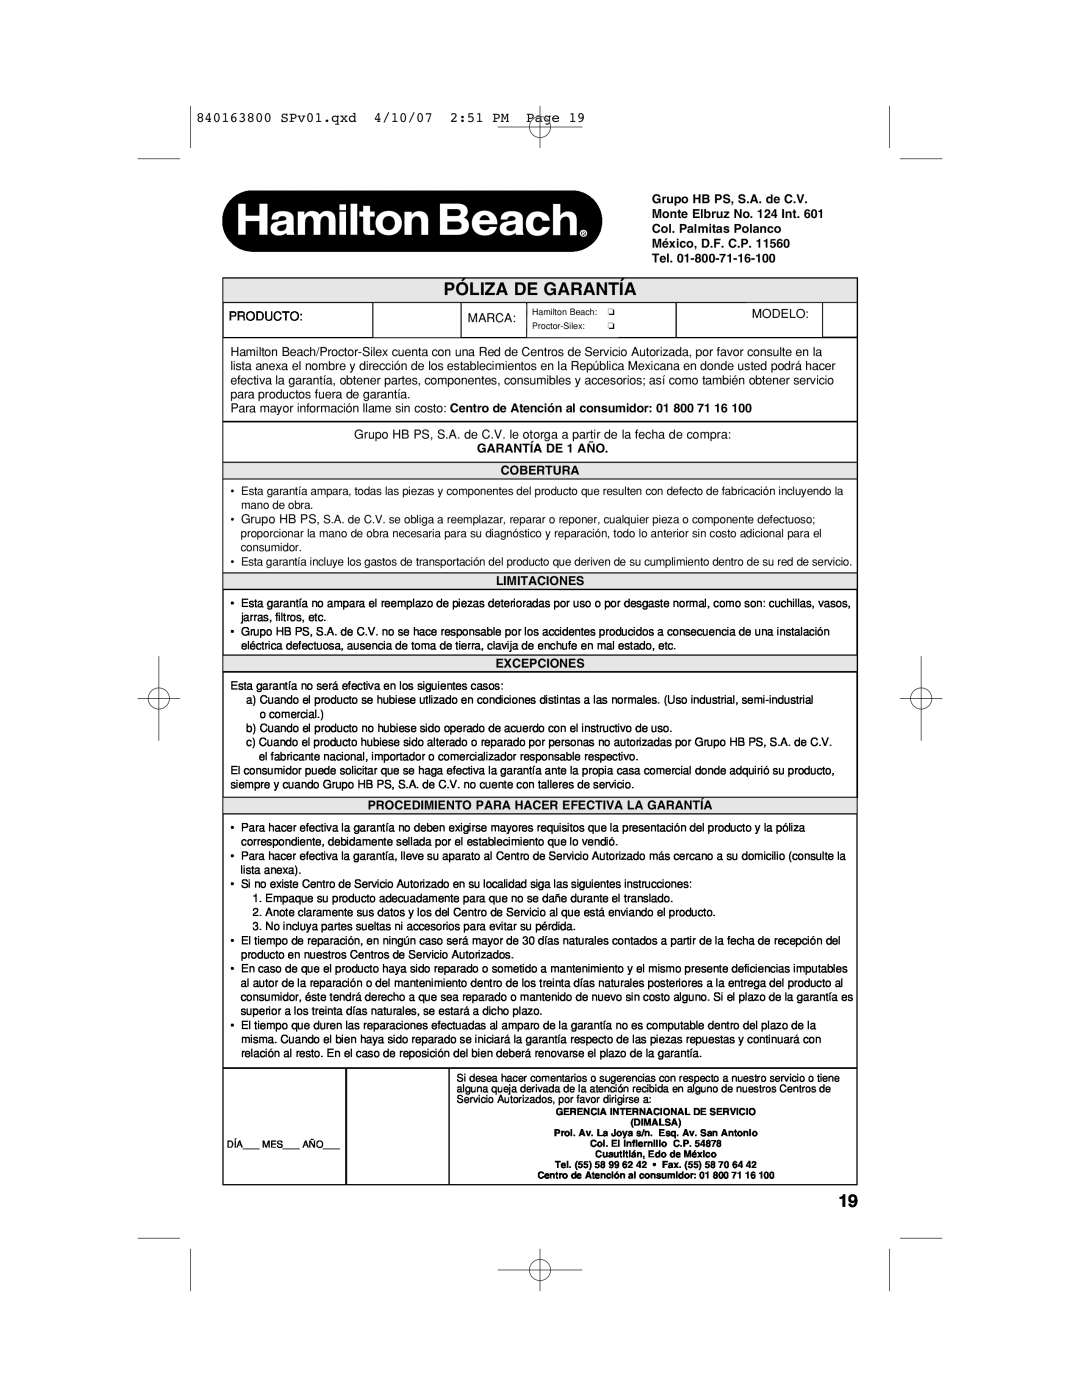 Hamilton Beach 62650 Póliza De Garantía, 840163800 SPv01.qxd 4/10/07 251 PM Page, GARANTÍA DE 1 AÑO COBERTURA, Excepciones 